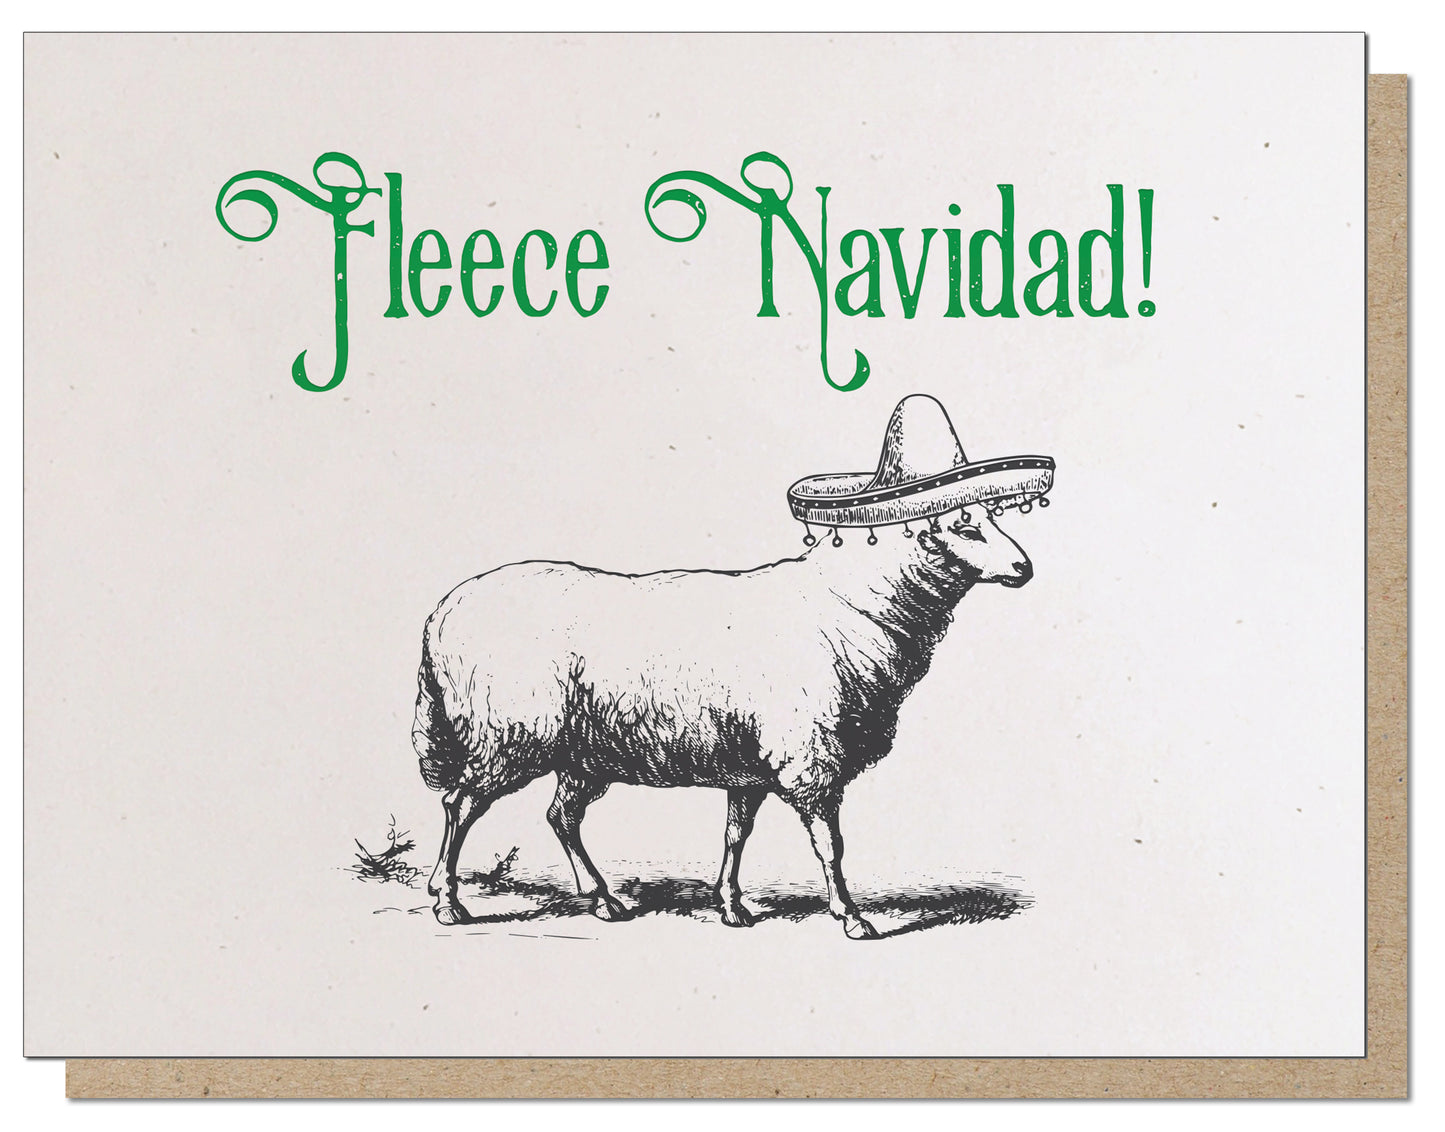 Fleece Navidad! Absurd Letterpress Holiday Card!